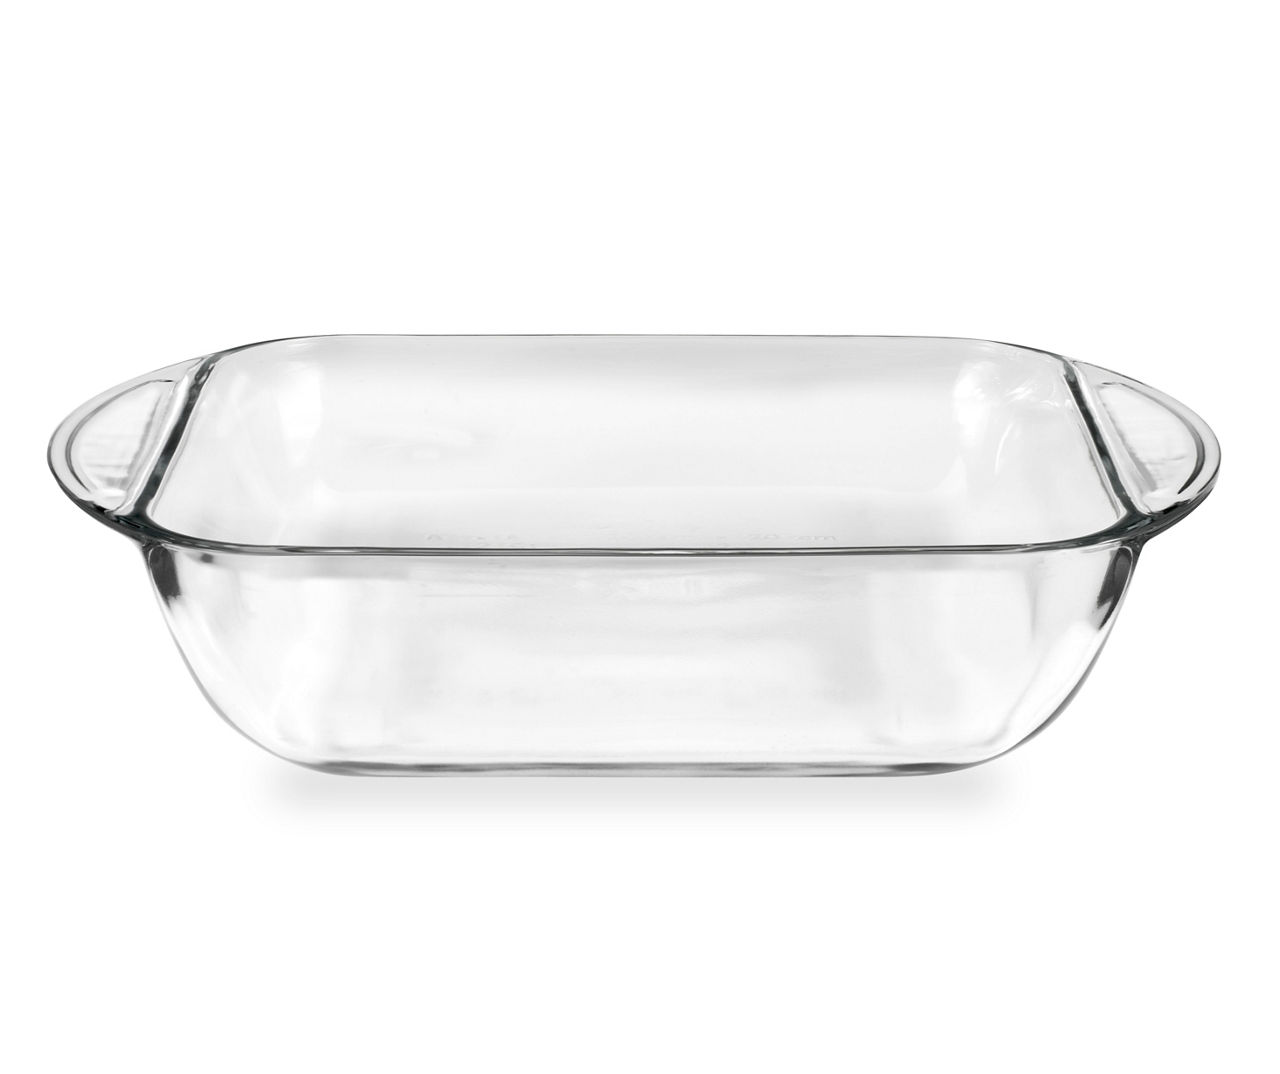 8-Piece Glass Bakeware Set with Lids, Rectangular Glass Baking